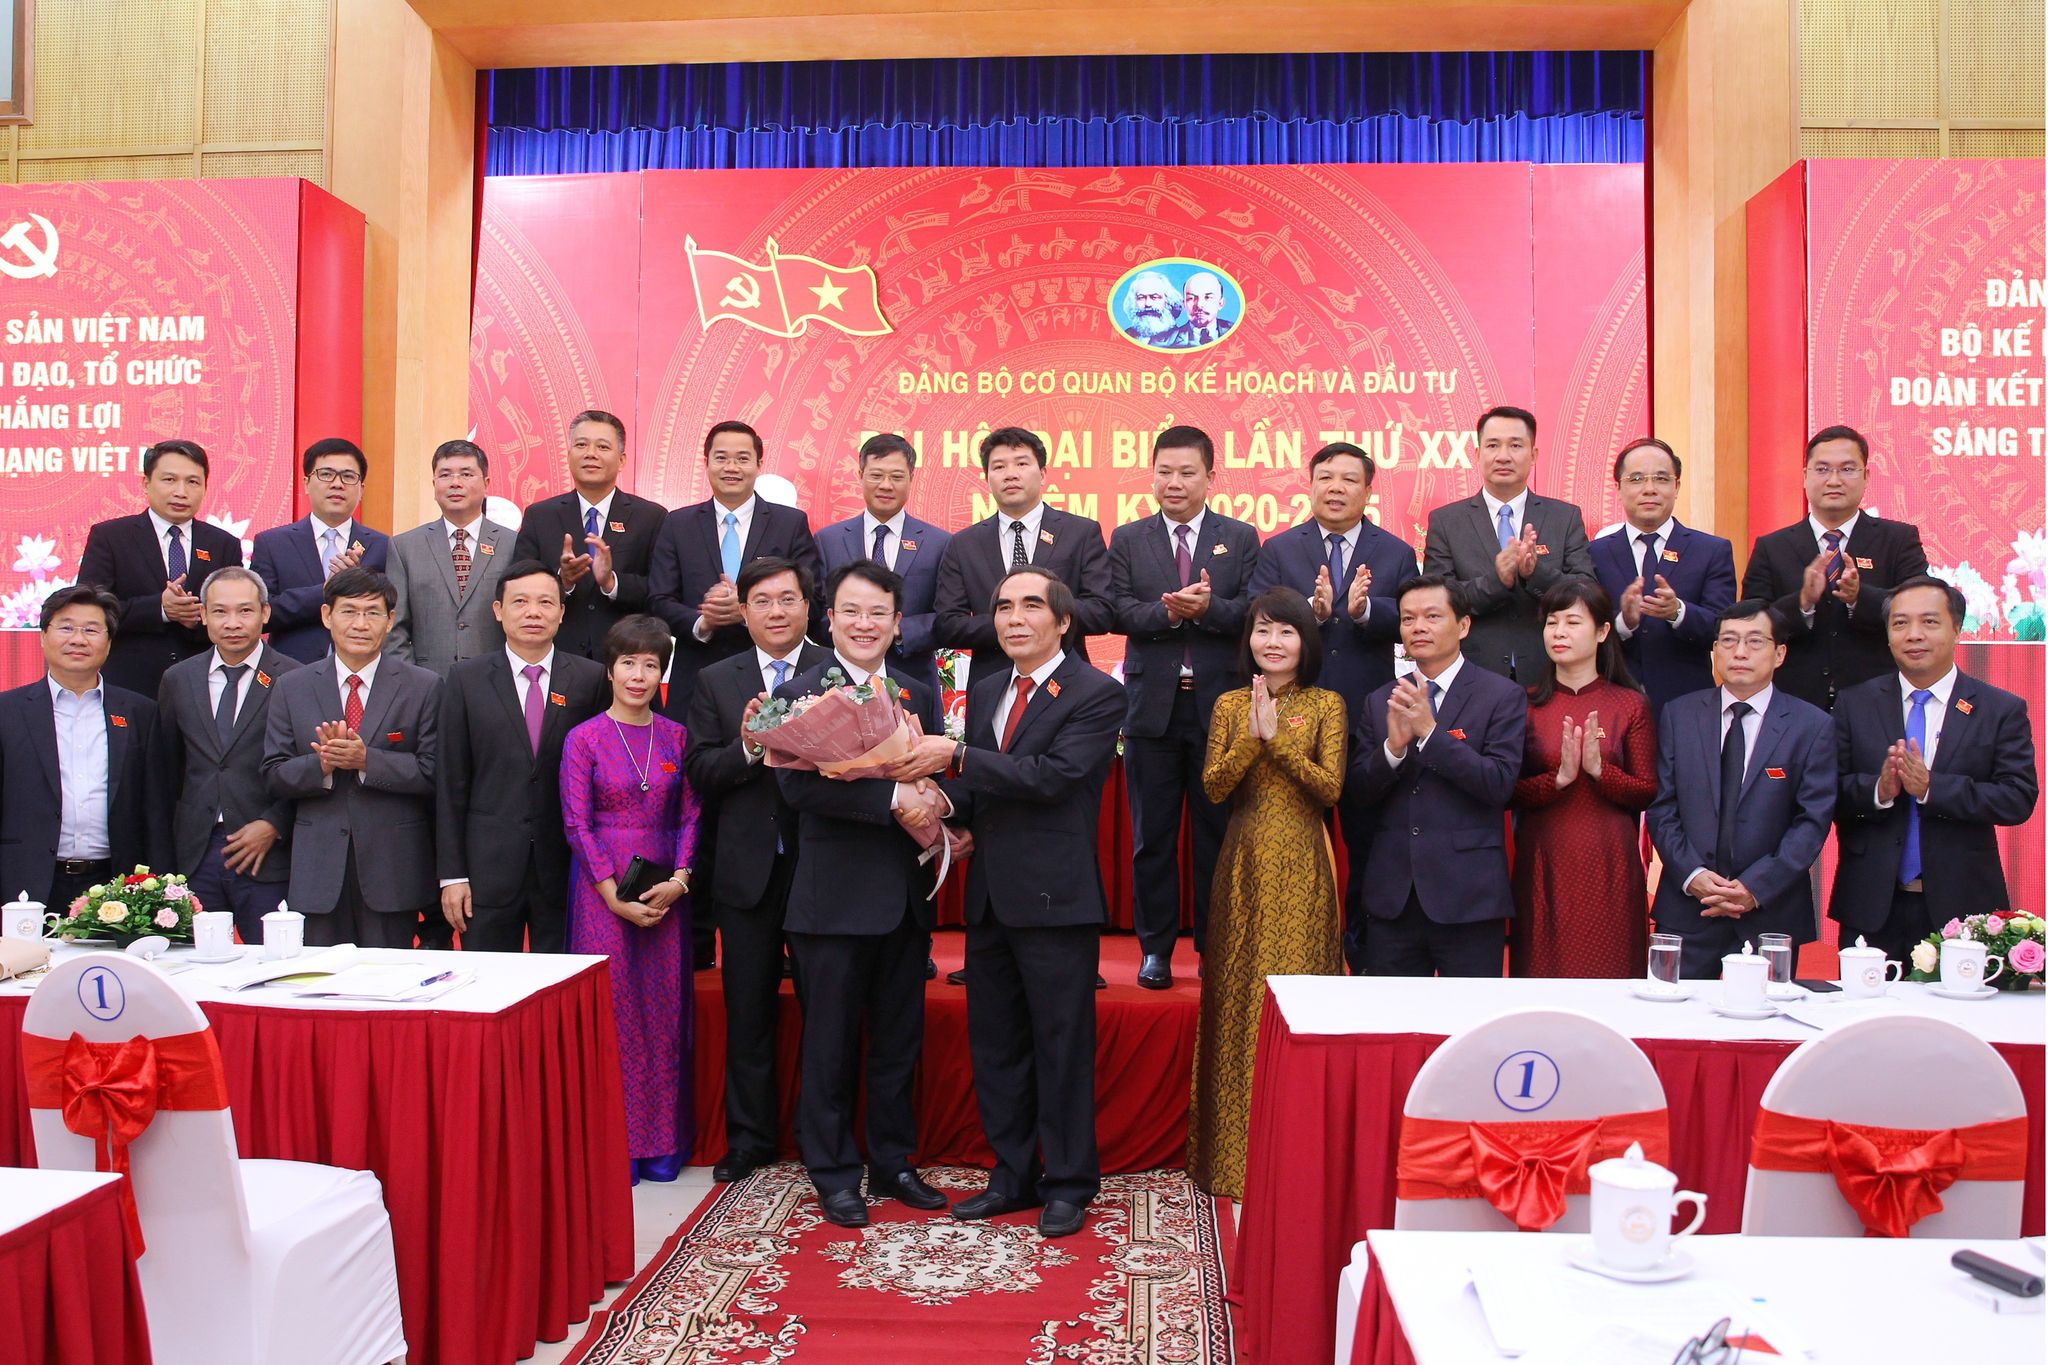 Thứ trưởng Nguyễn Văn Trung tặng hoa chúc mừng Thứ trưởng Trần Quốc Phương, tân Bí thư Đảng ủy và toàn thể Ban chấp hành Đảng bộ cơ quan nhiệm kỳ 2020-2025